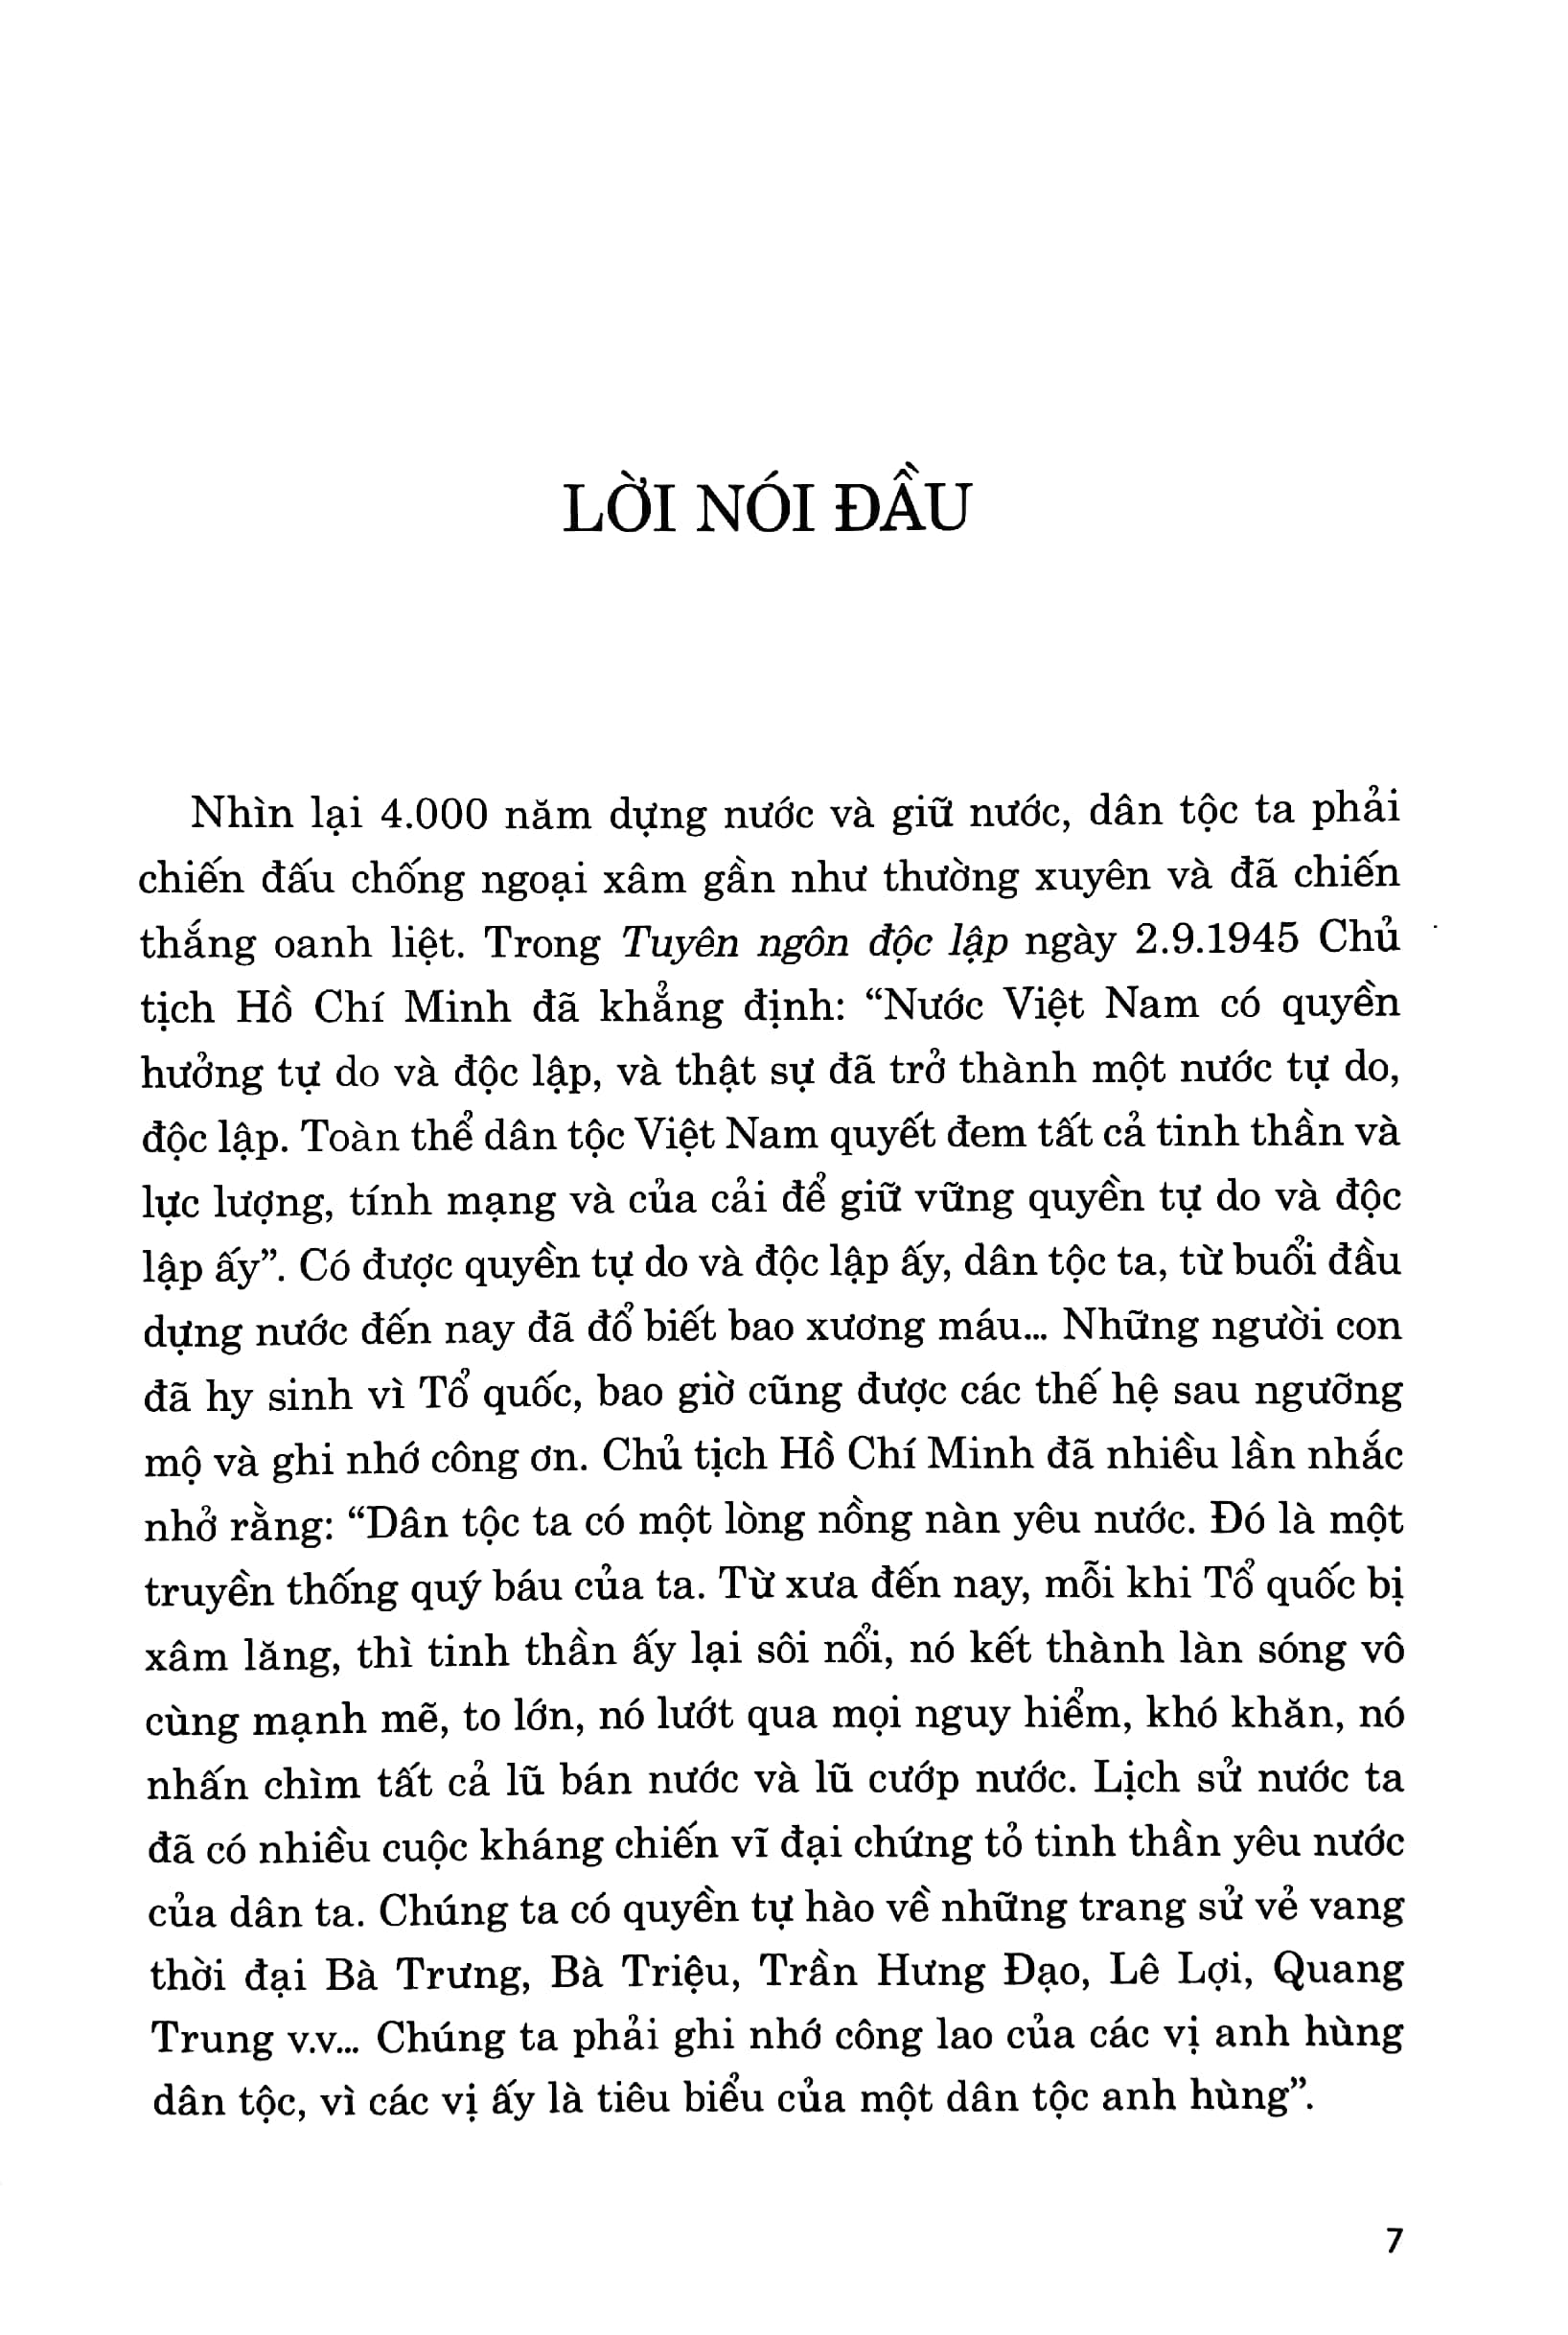 Danh Nhân Quân Sự Việt Nam PDF